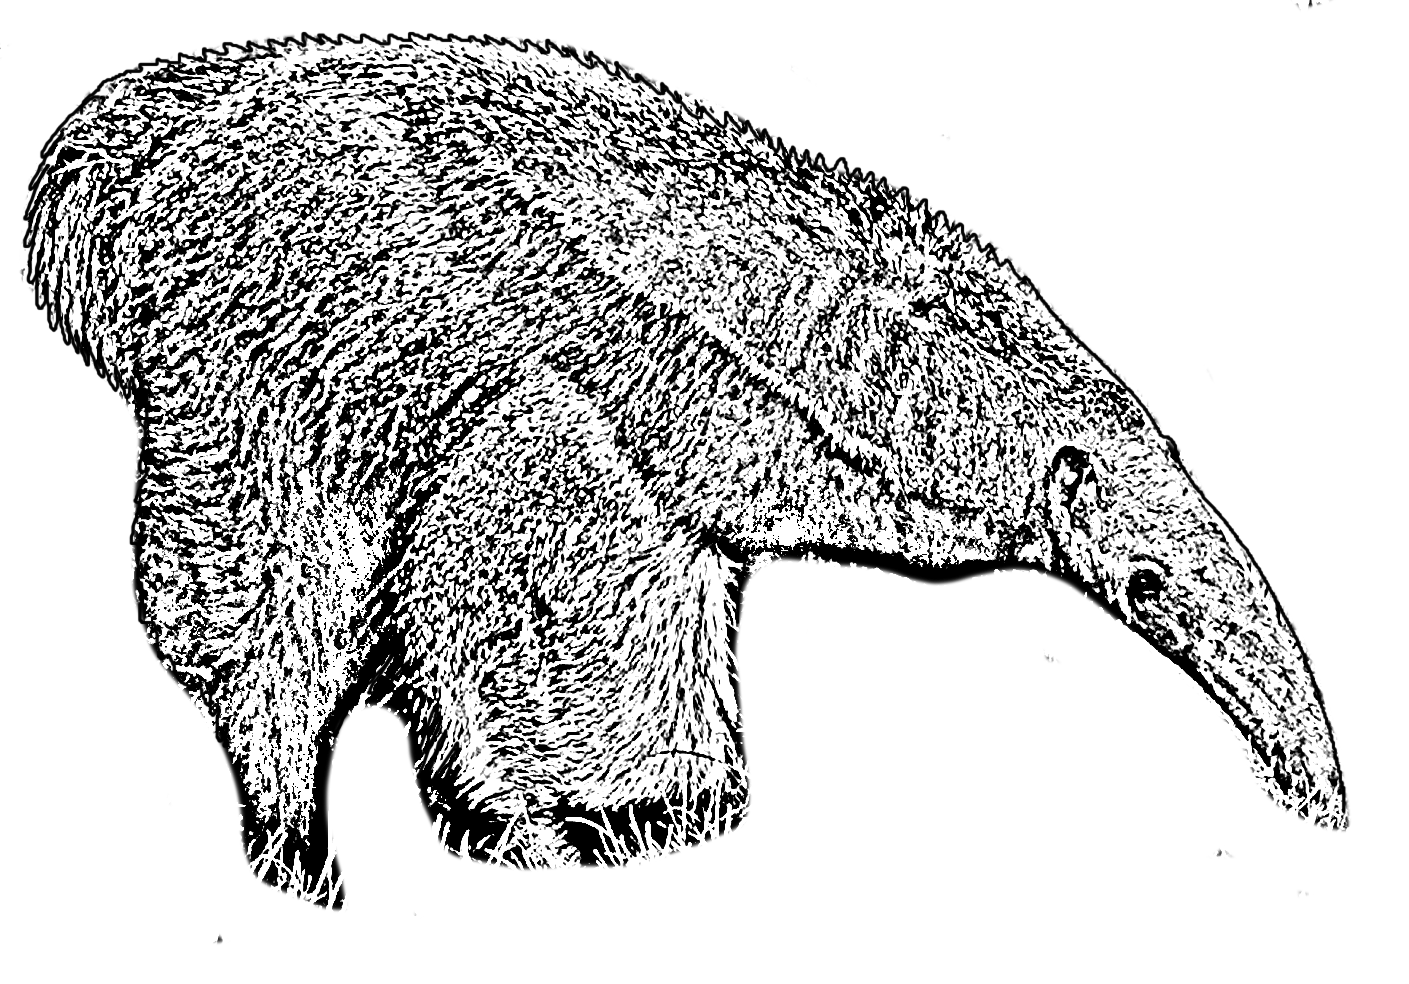 Dibujo para colorear de un oso hormiguero